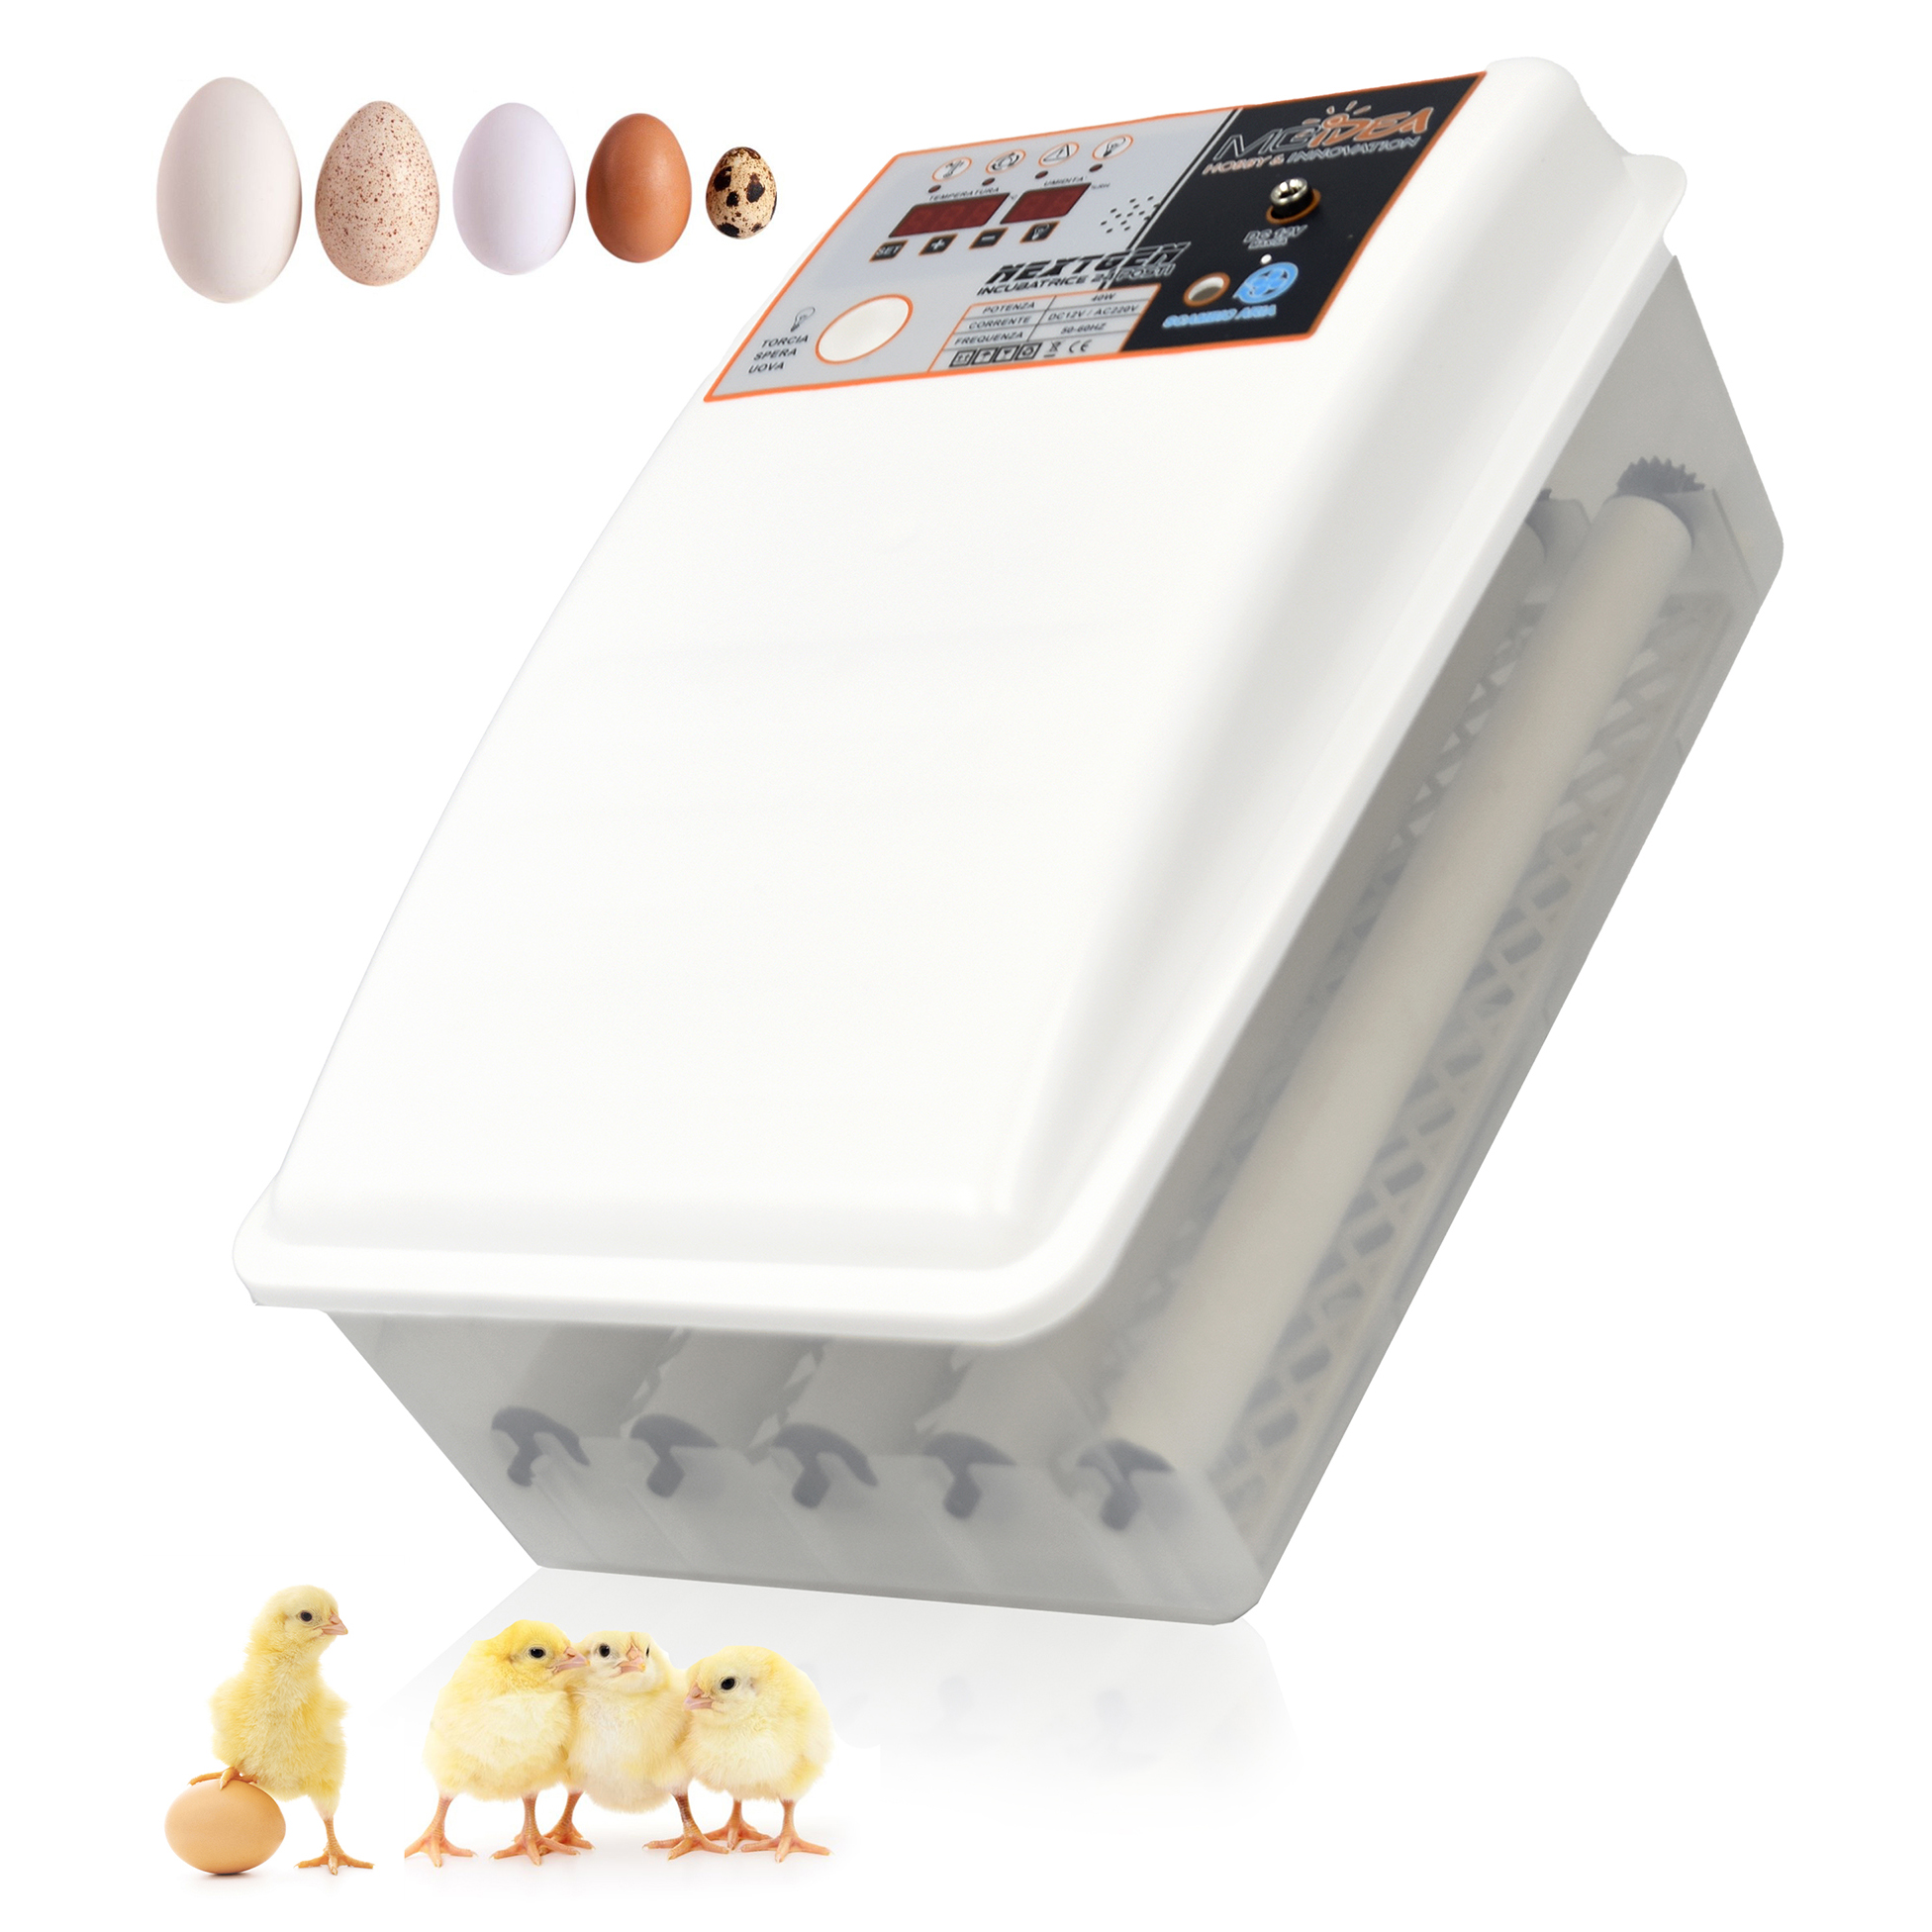 Come funziona l'incubatrice per uova di gallina?